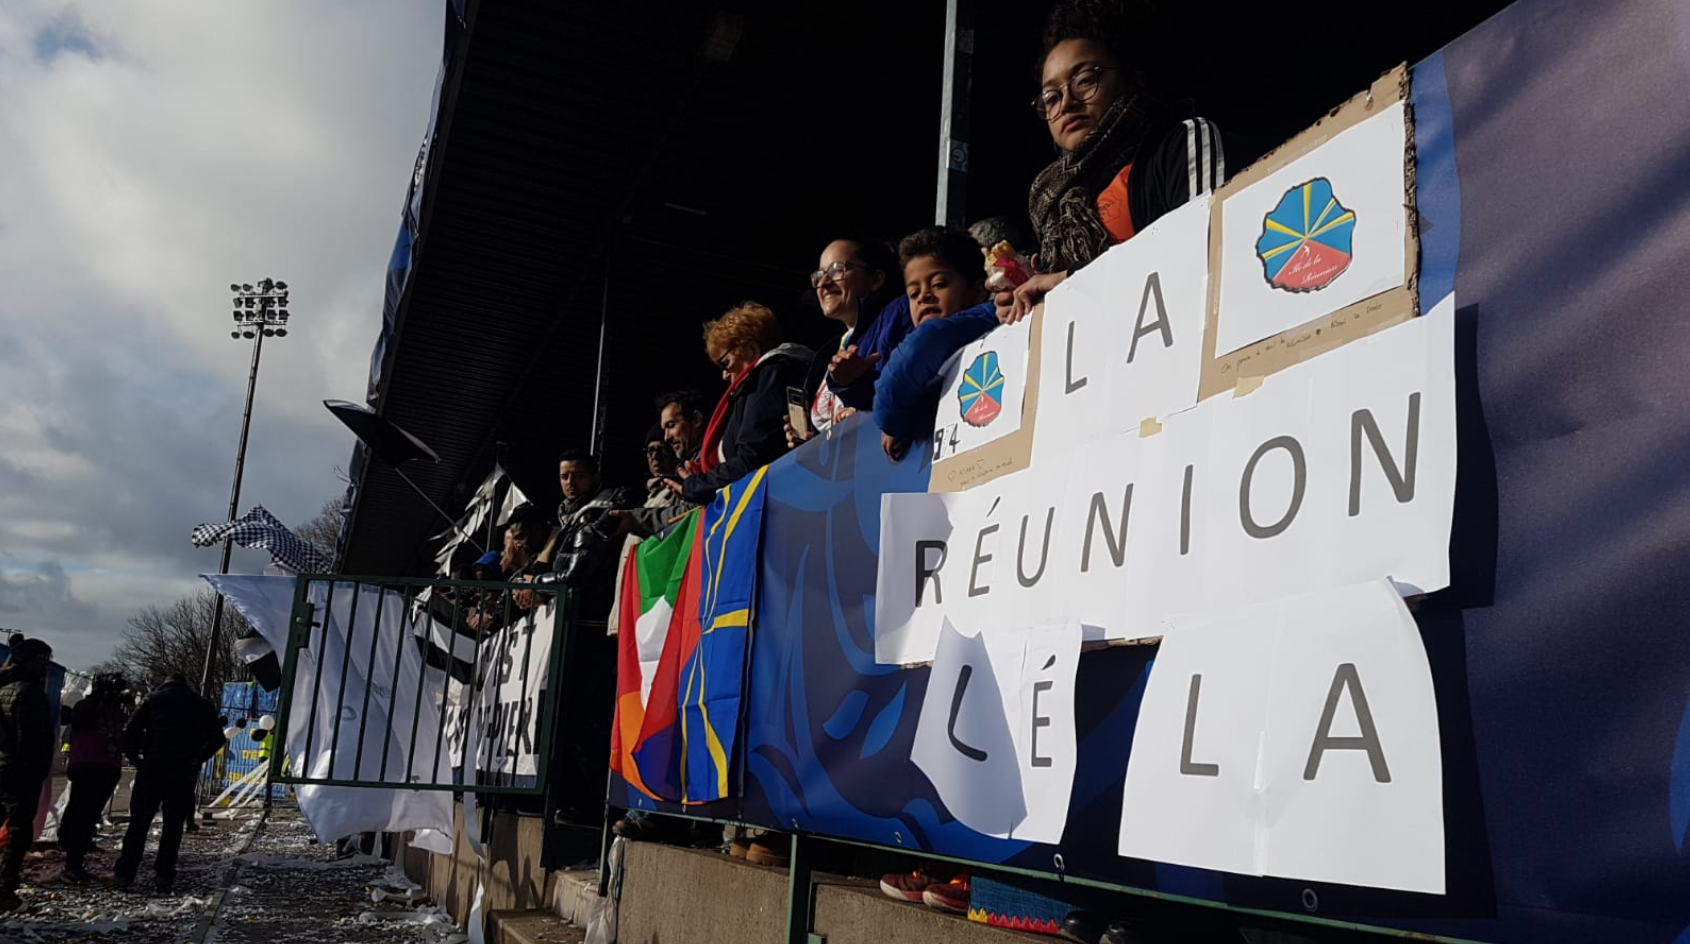 La Réunion lé là ! Les supporters réunionnais présents à Épinal donnent de la voix pour la JSSP ! 